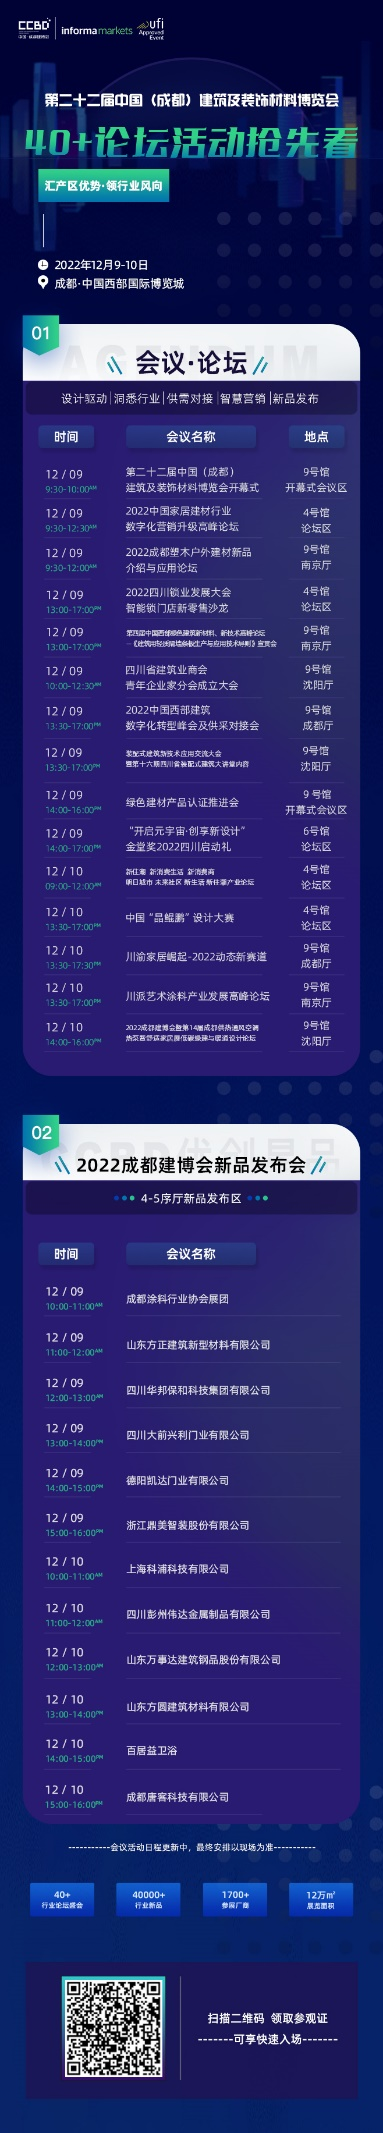 倒計時30天 2022中國成都建博會有“您”更精彩